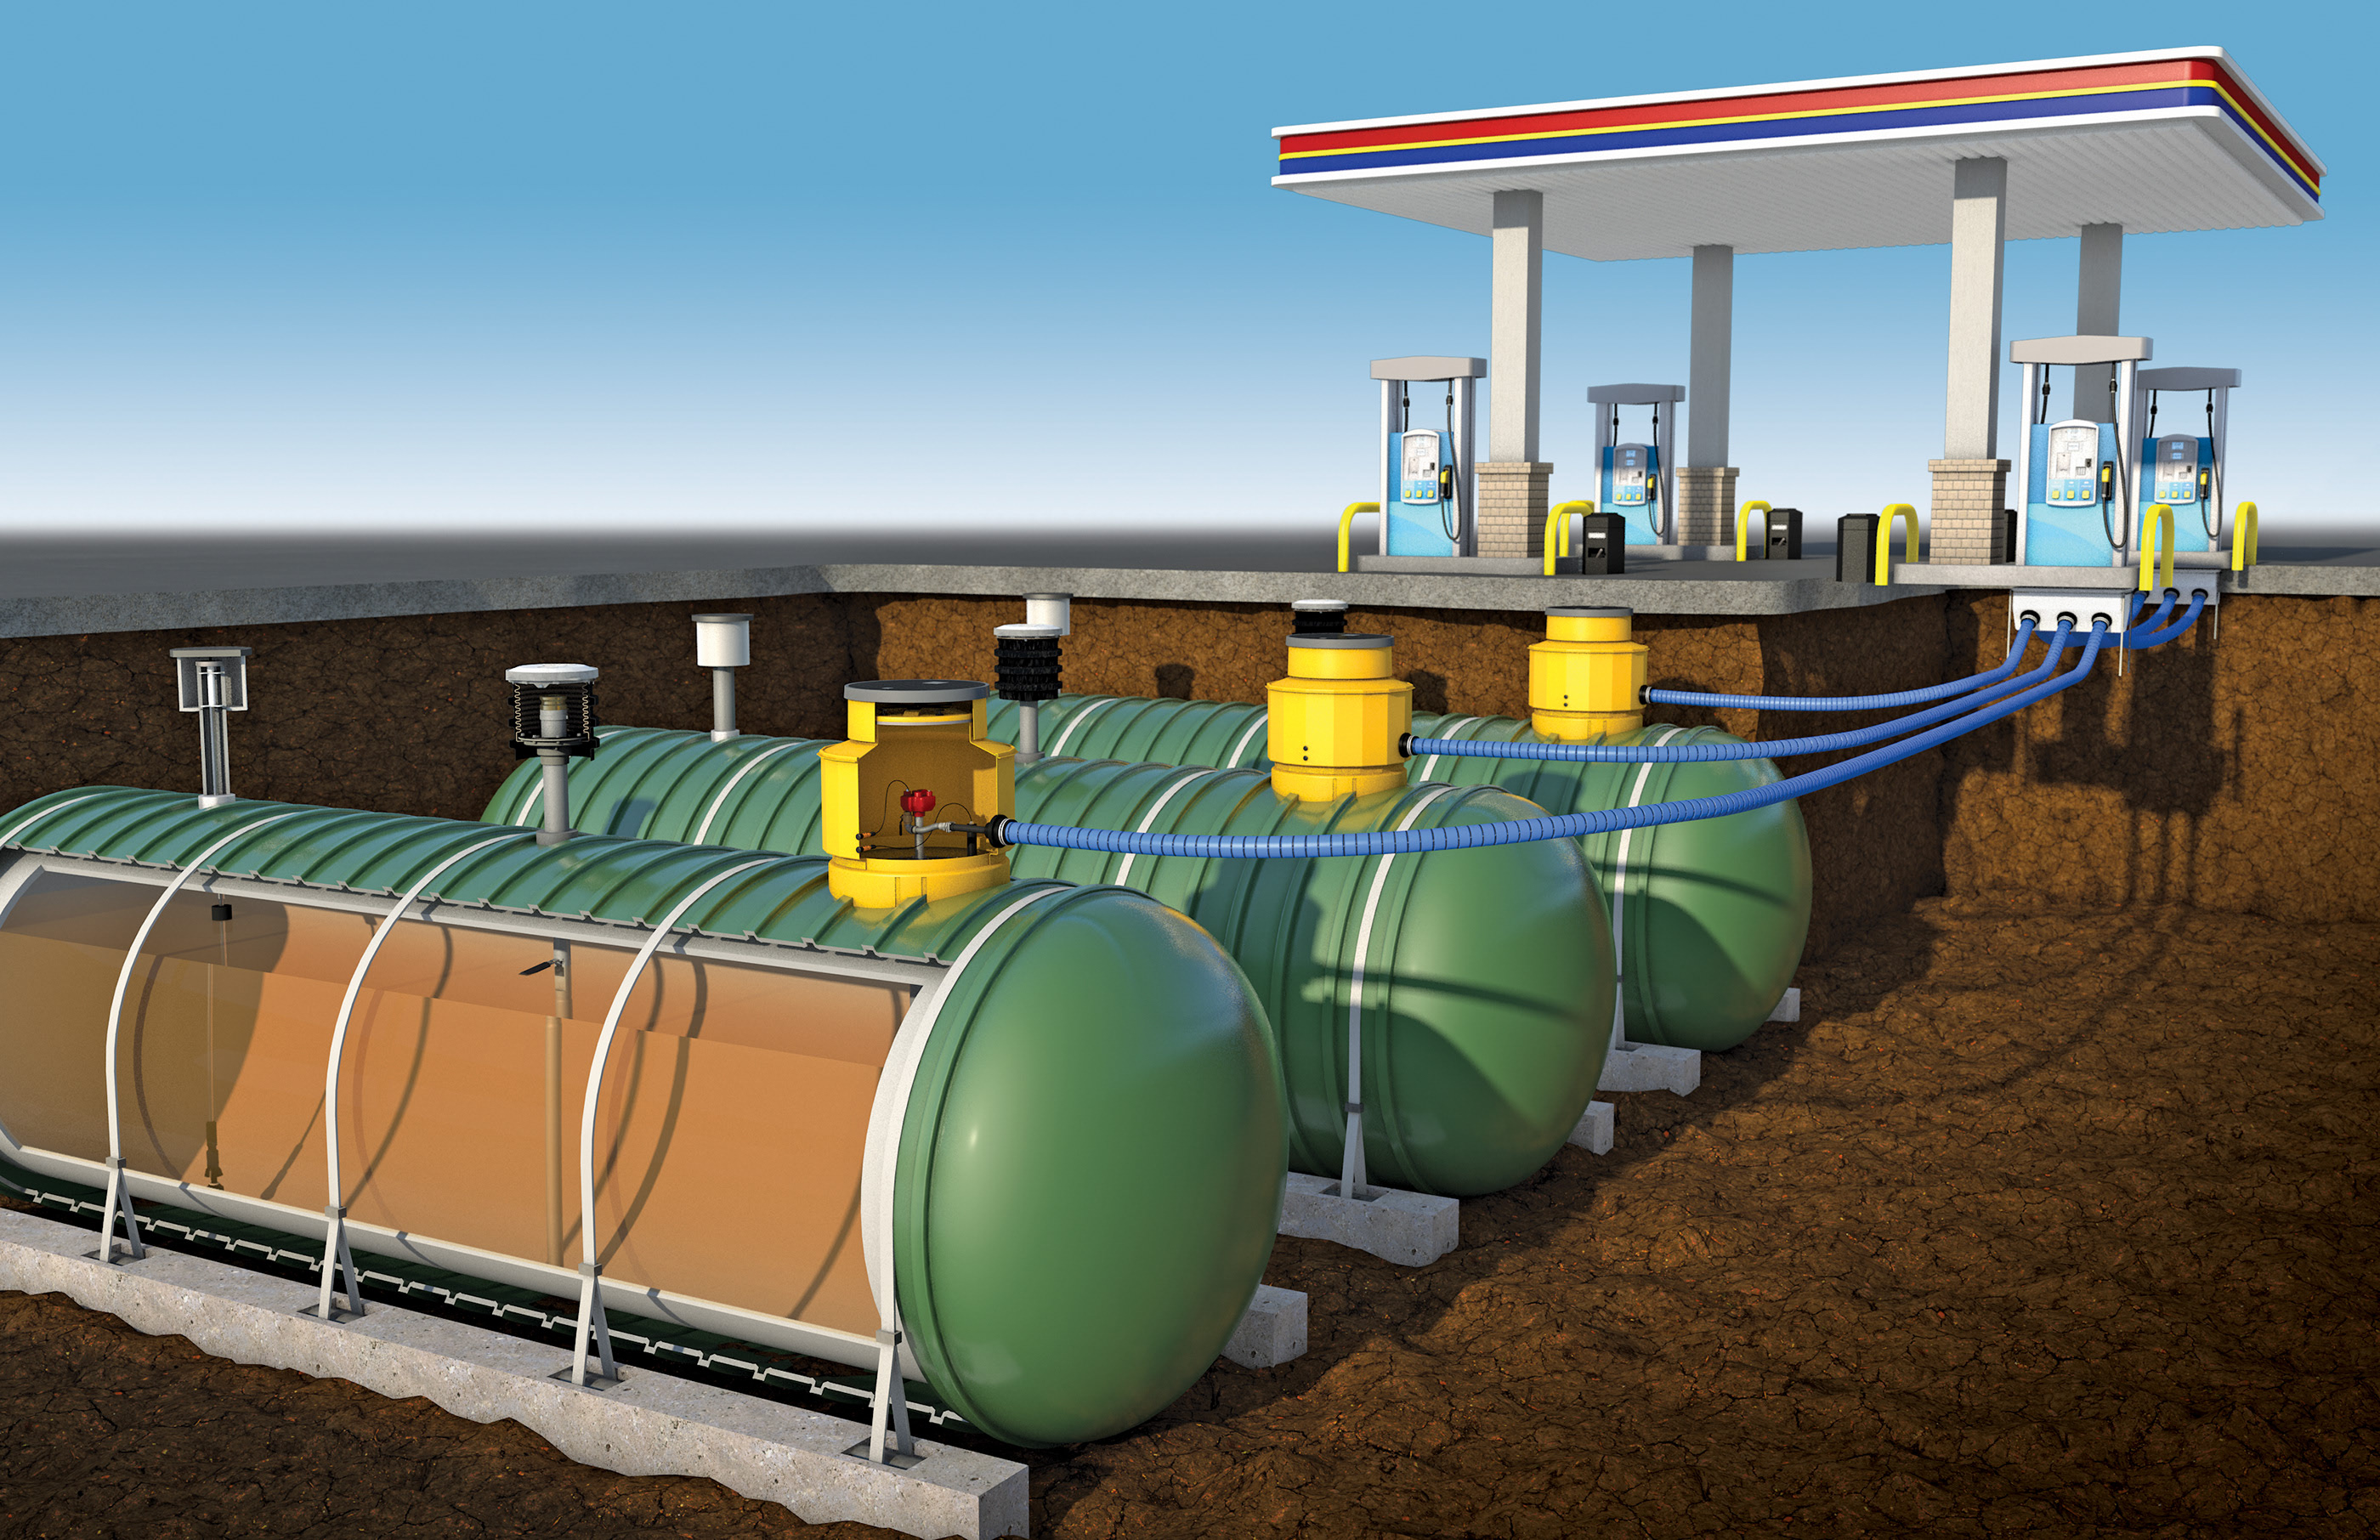 Заправка топливных баков. Подземный РГС-50 резервуар для АЗС. Резервуарный парк АЗС. Емкость для ГСМ. Резервуар для хранения топлива.